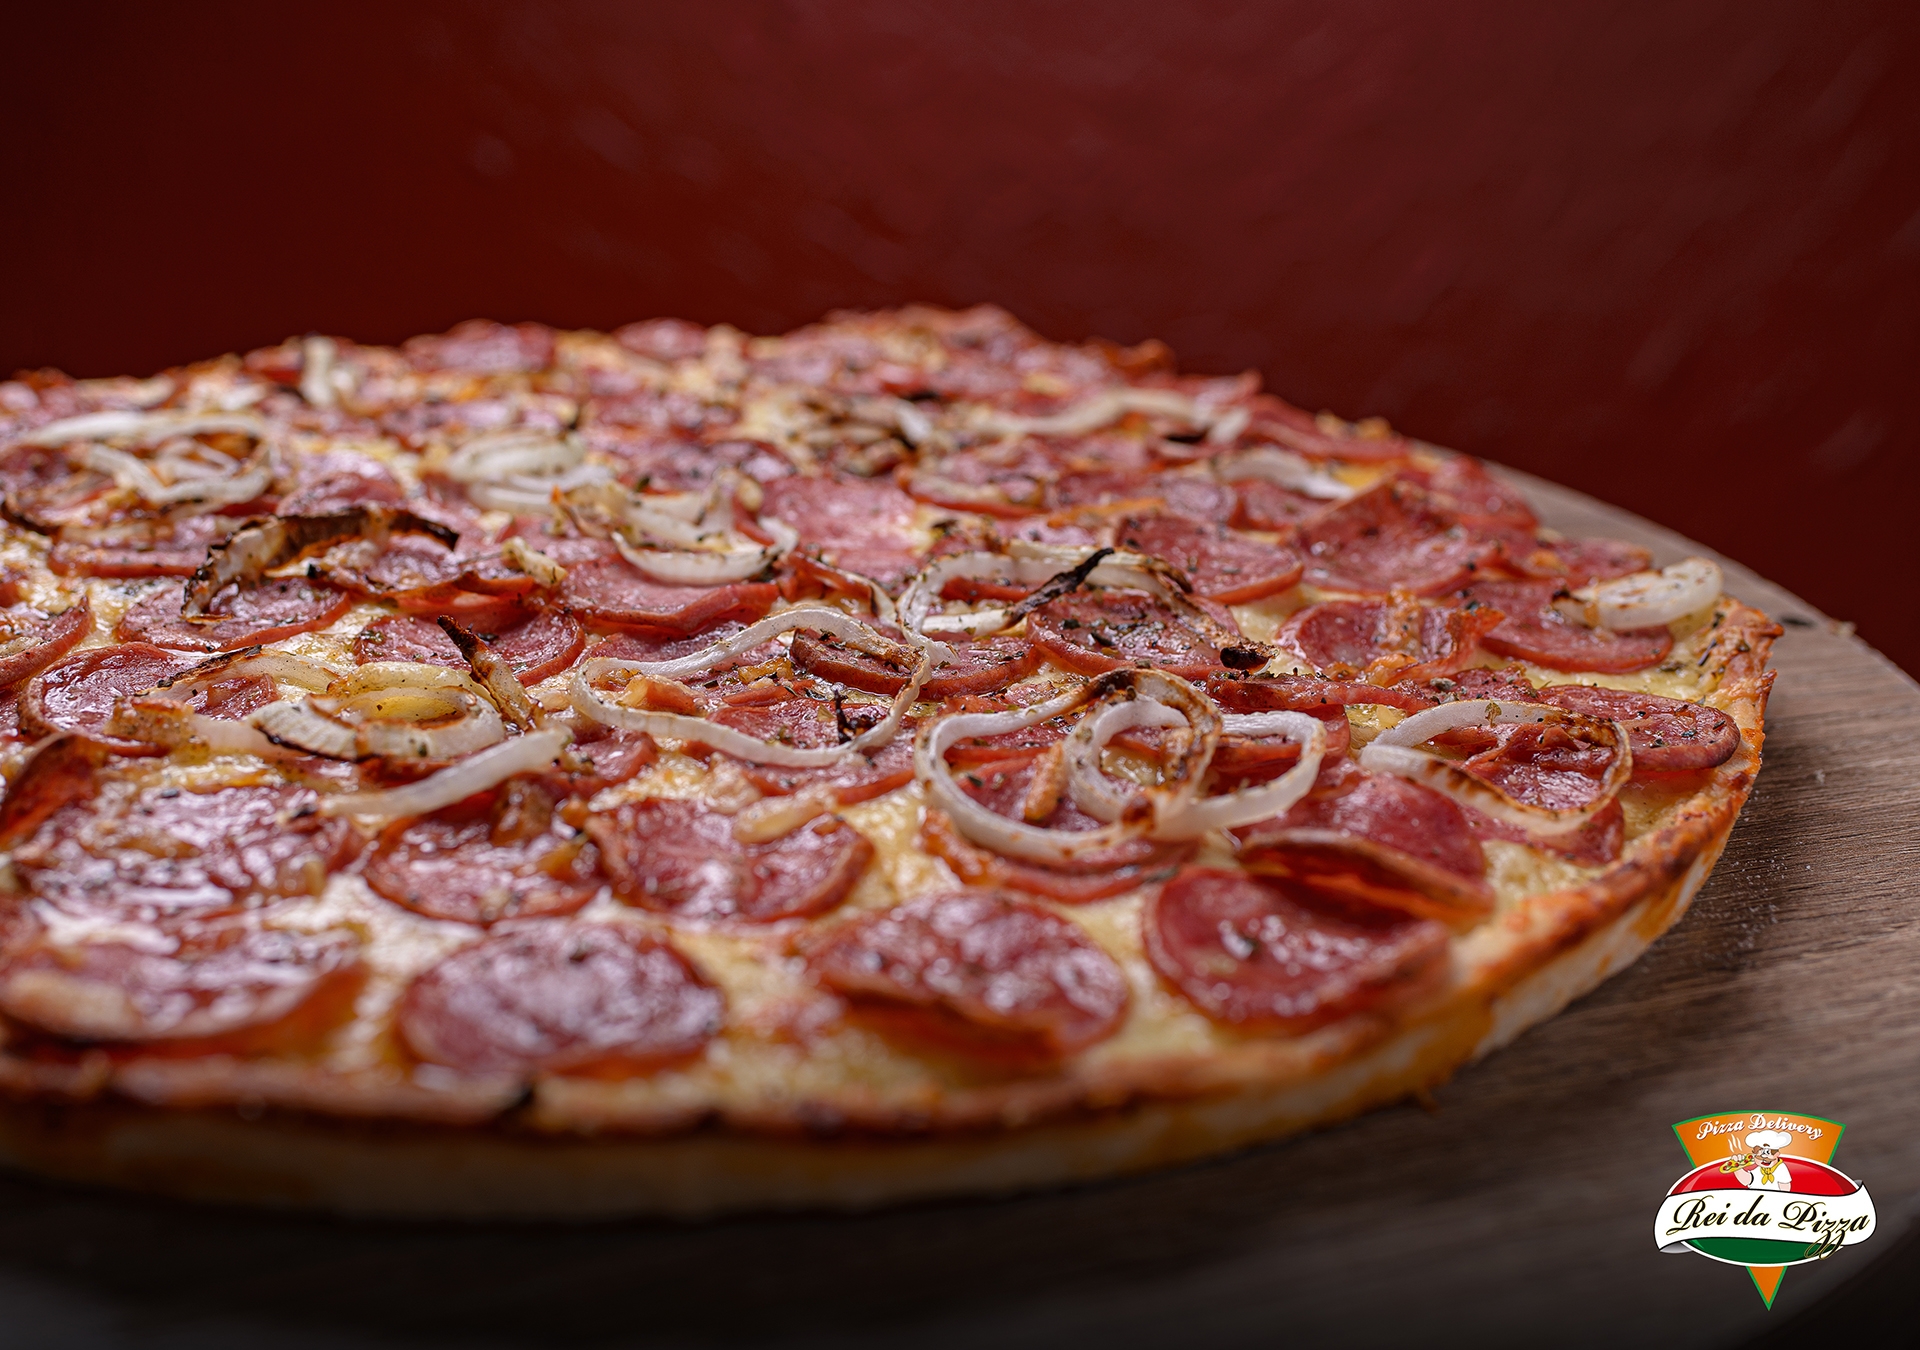 Domingão é #pizza de #calabresa da #reidapizzaczs